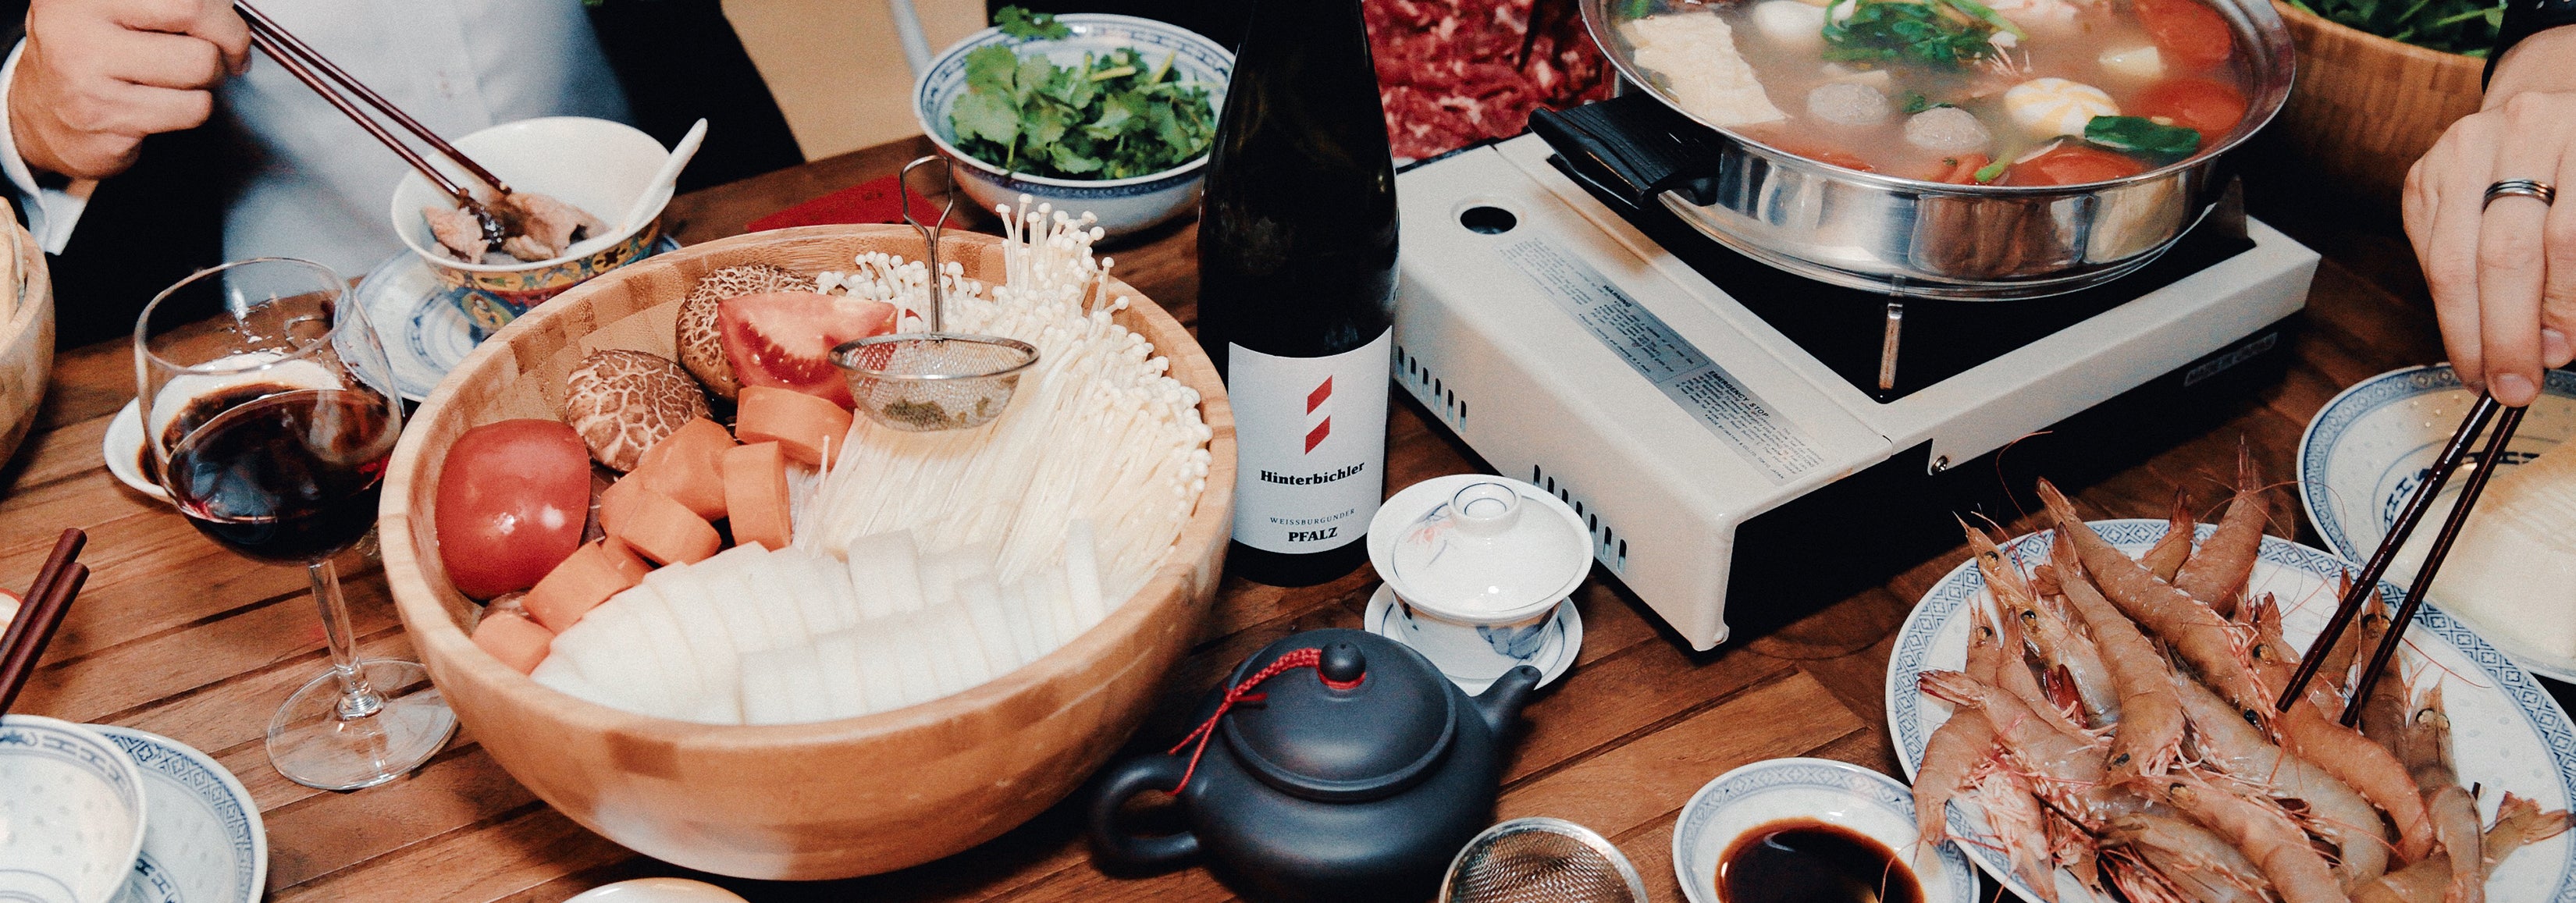 8 Lunar New Year Food & Wine Pairings 